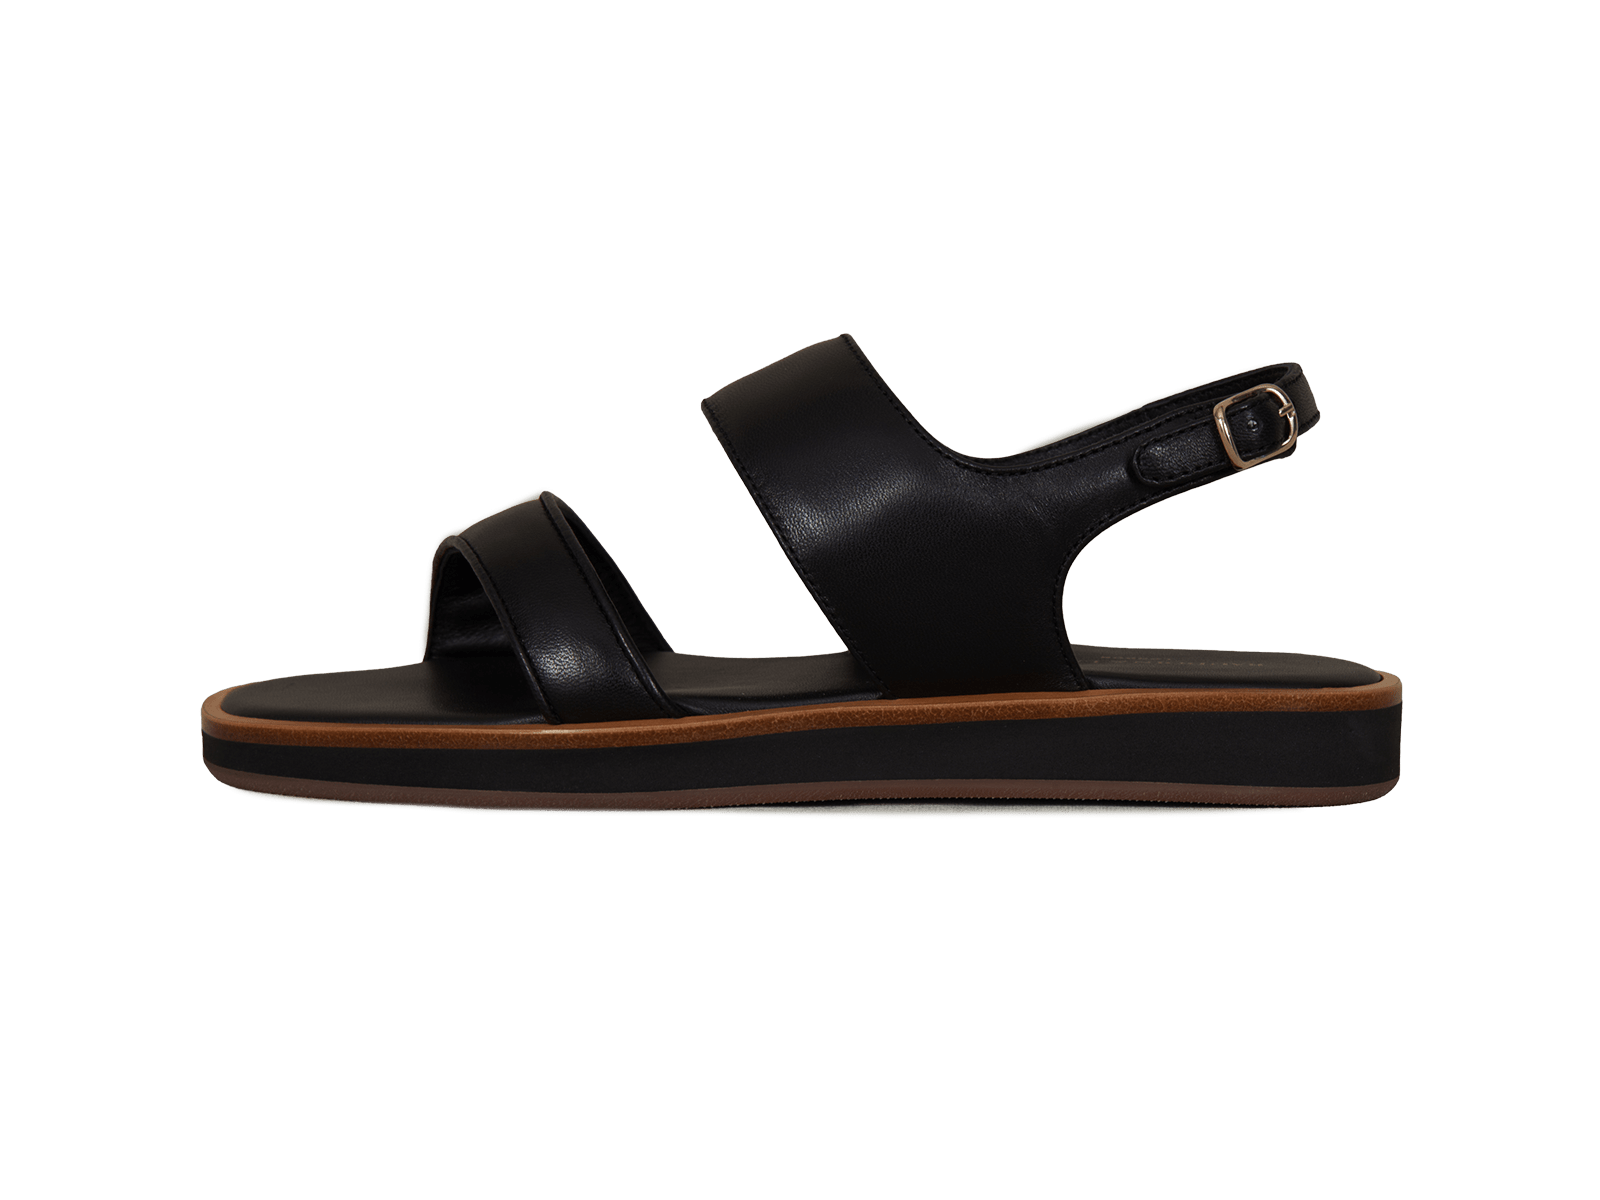 Nuage Sandal in Black Nappa